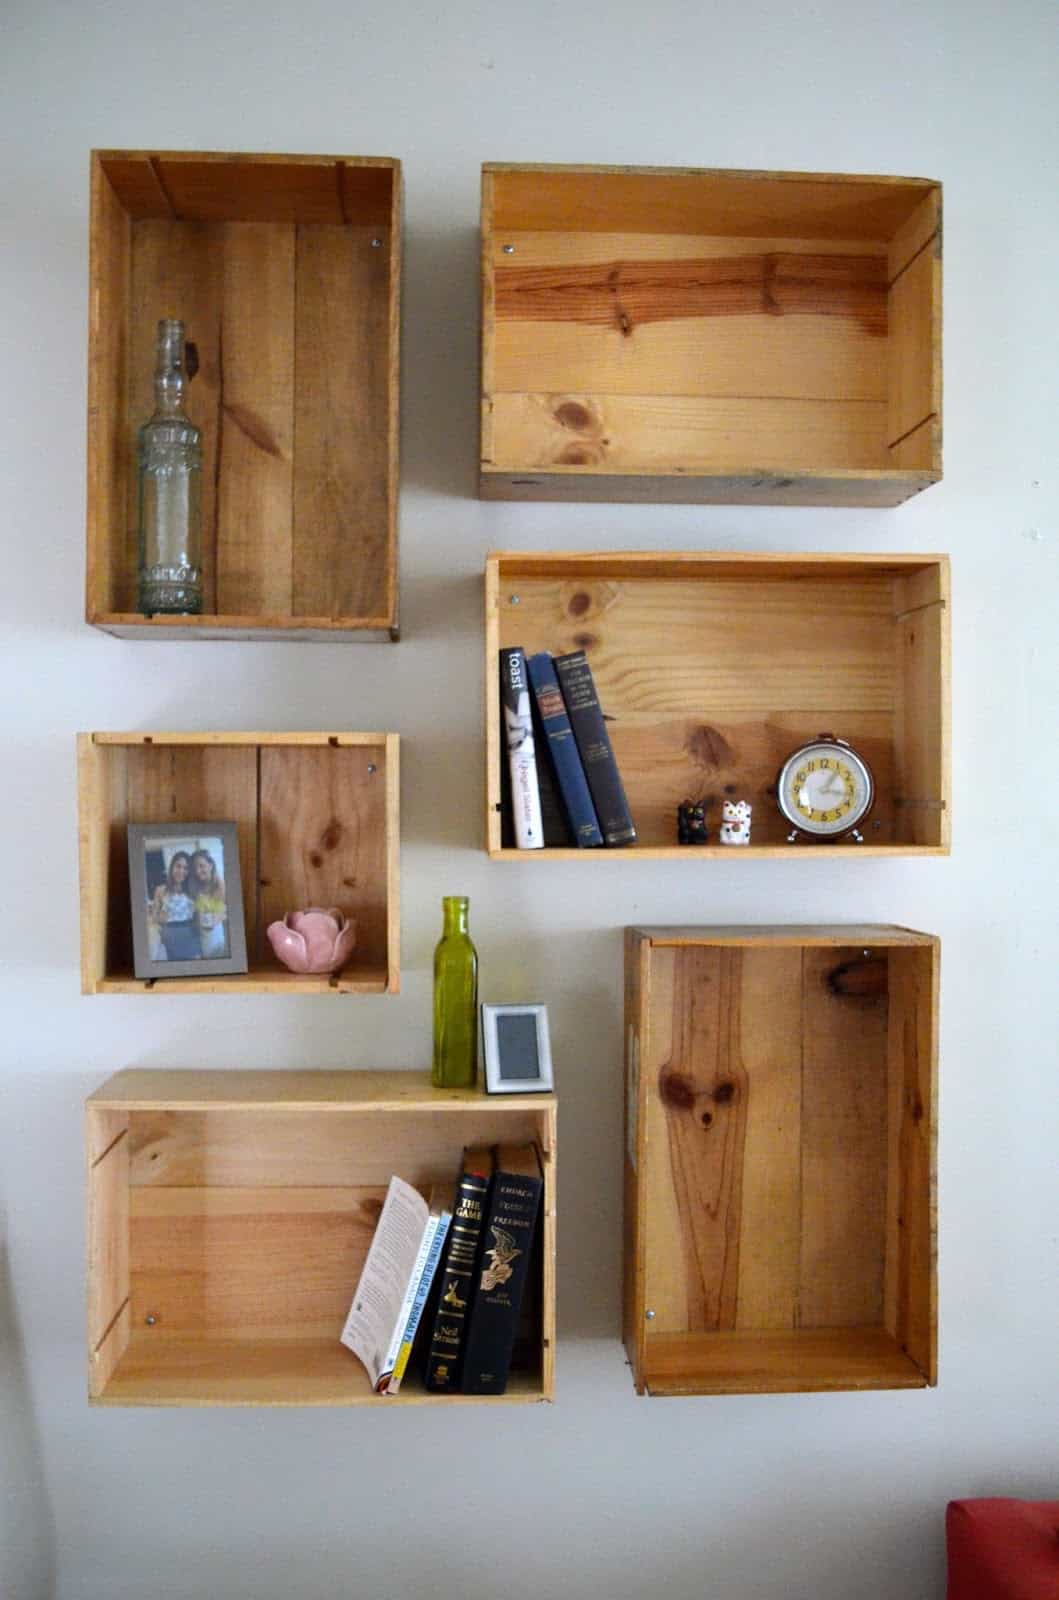 Kệ gỗ với các ô riêng biệt được gắn vào tường cùng tạo điểm nhấn giản đơn cho căn phòng